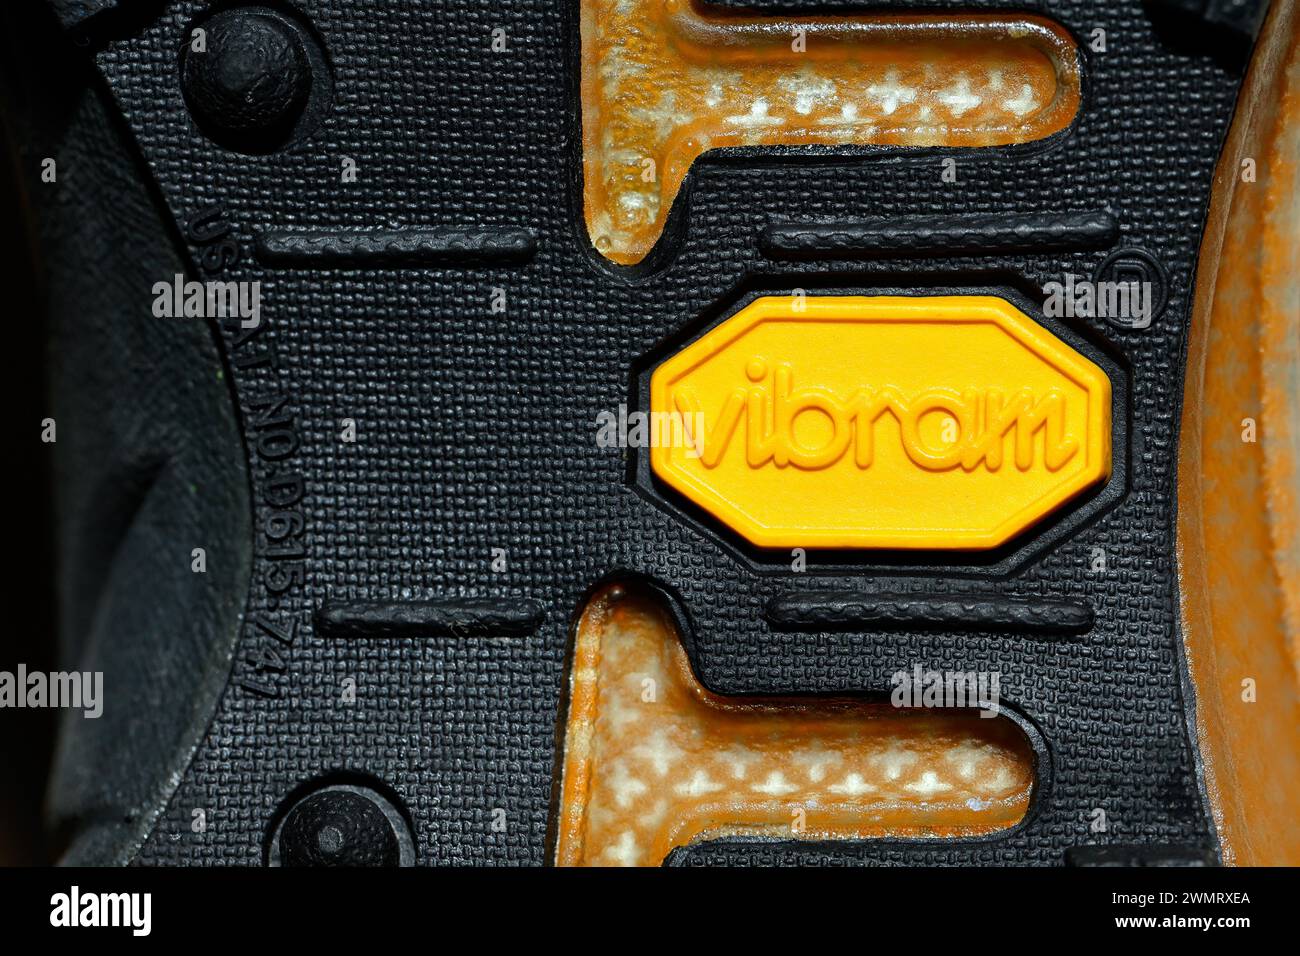 Une semelle en caoutchouc de marque Vibram sur la semelle extérieure d'une chaussure. Banque D'Images